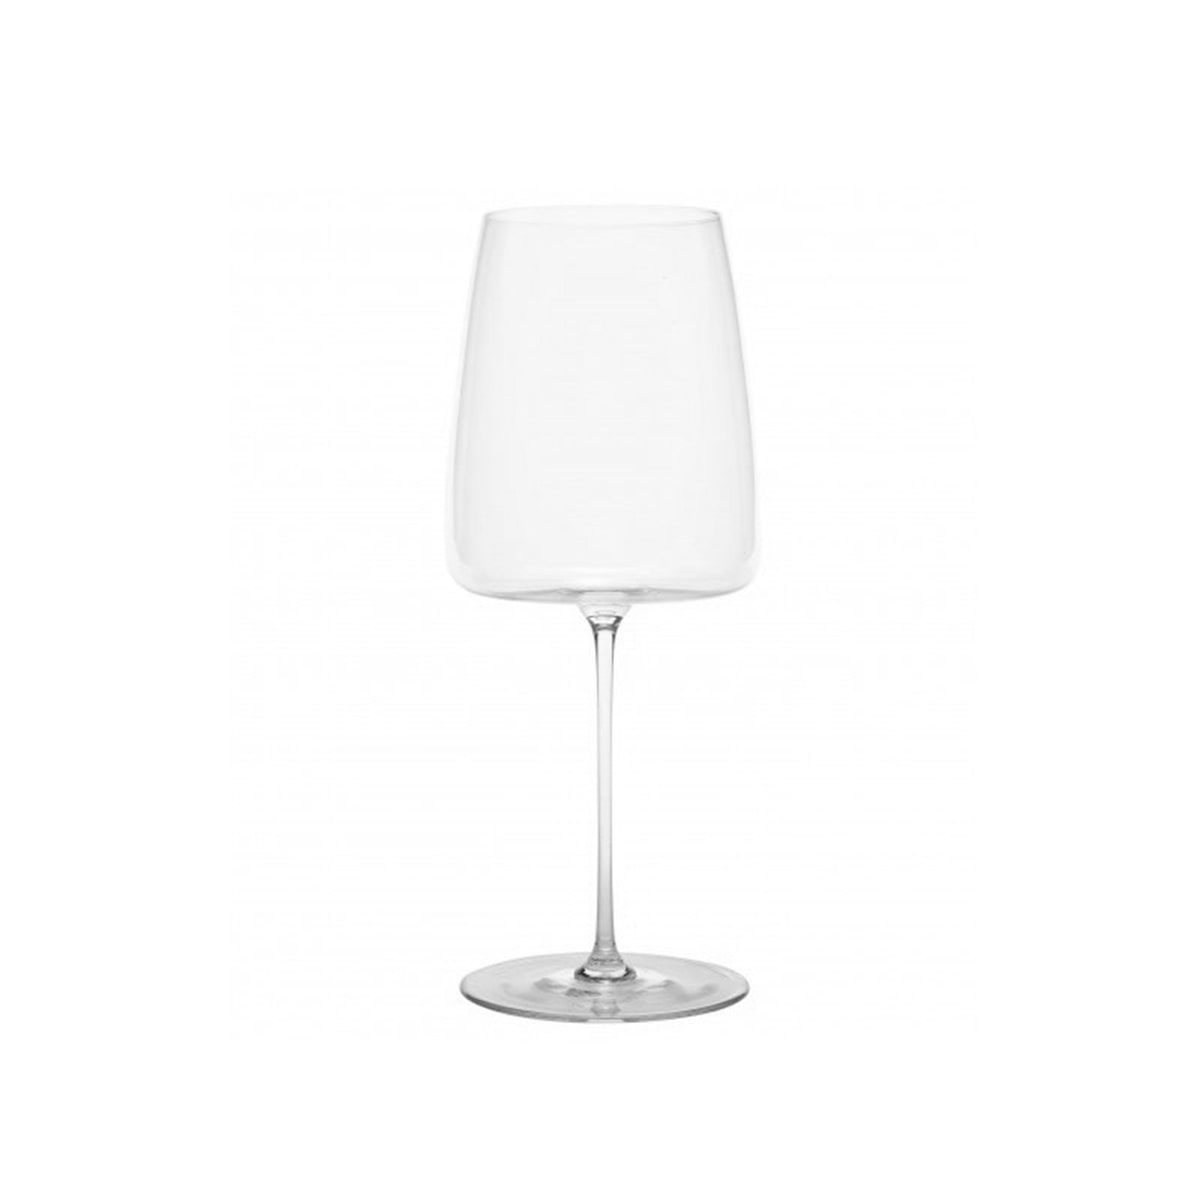 ZAFFERANO ULTRALIGHT Wine Glass 자페라노 울트라라이트 와인잔_UL06000MADE IN SLOVAKIA